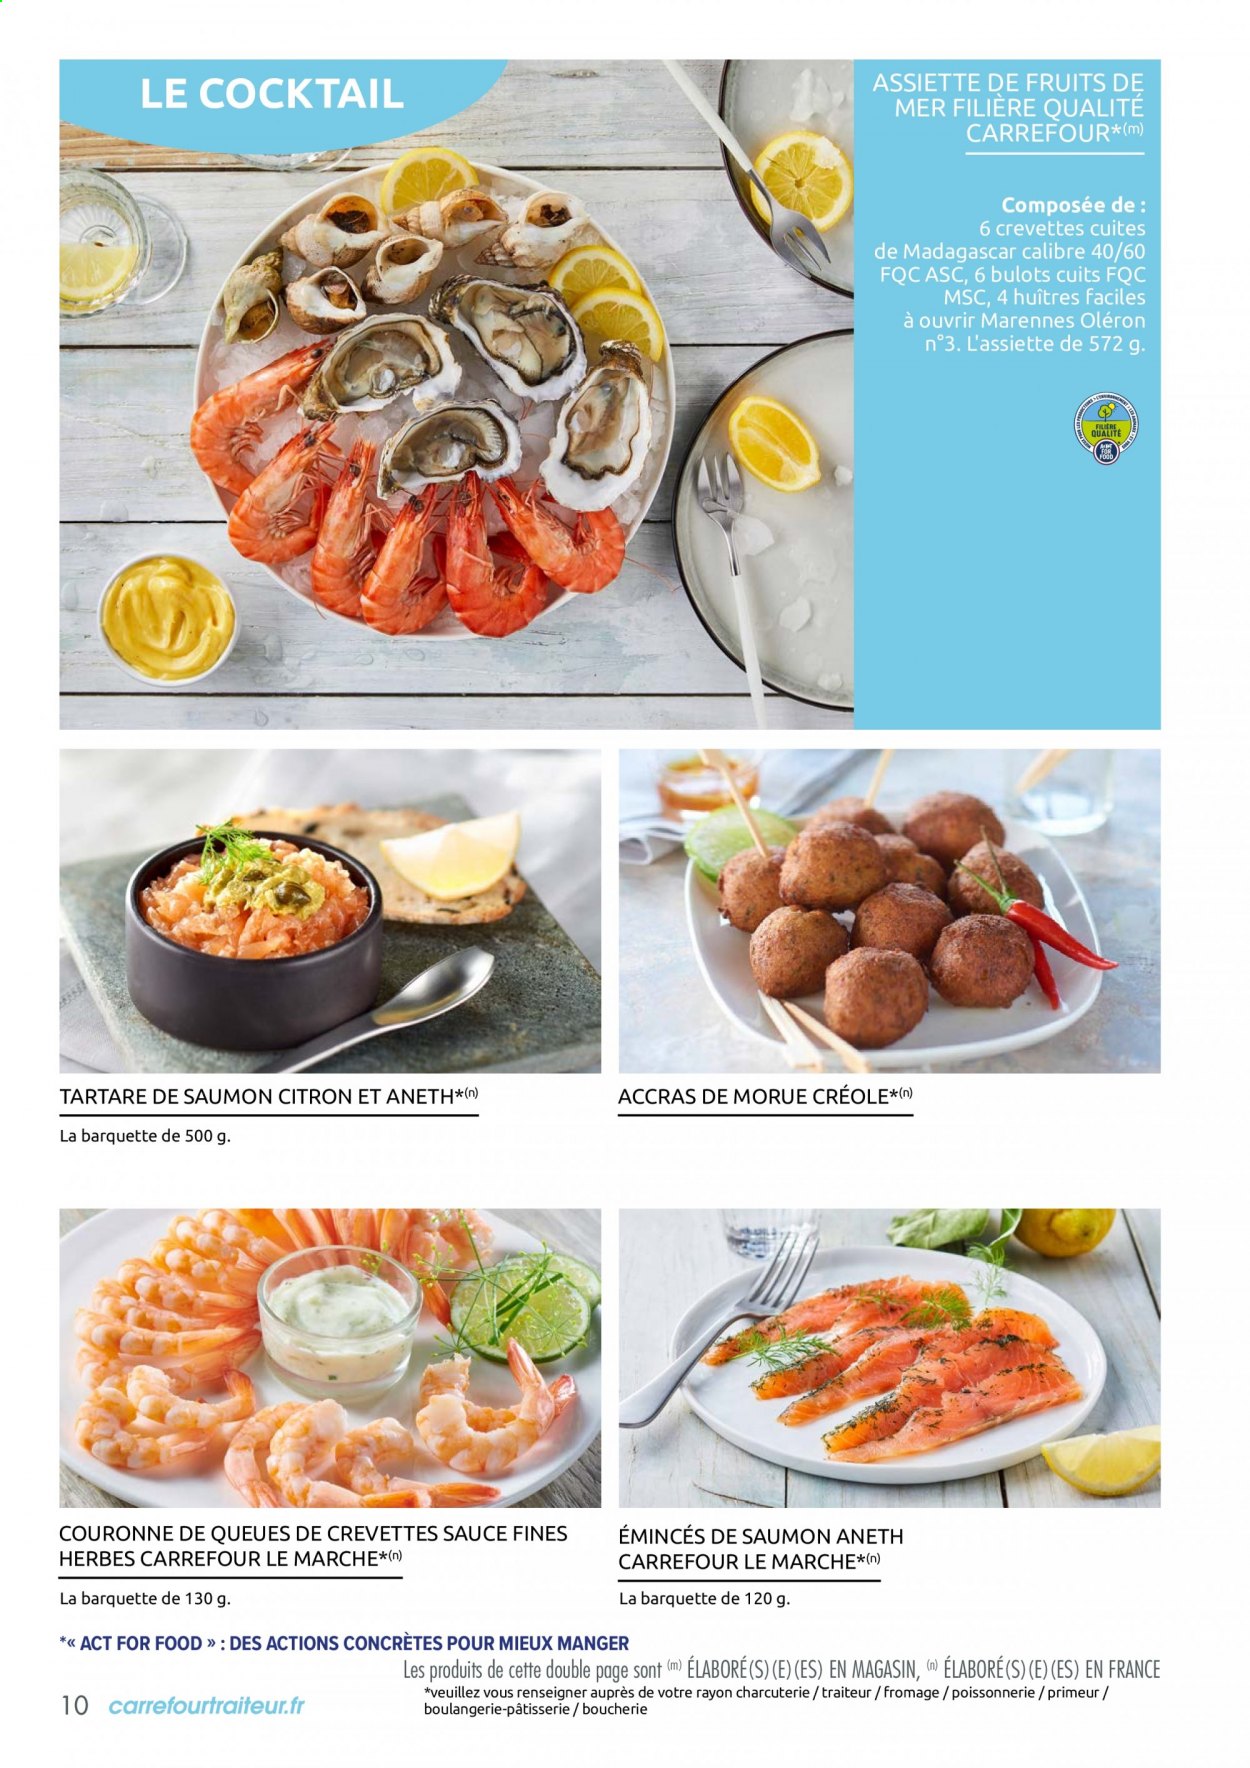 thumbnail - Catalogue Carrefour Hypermarchés - Produits soldés - bulot, crevettes, huître, accras de morue, tartare de saumon, fromage. Page 10.